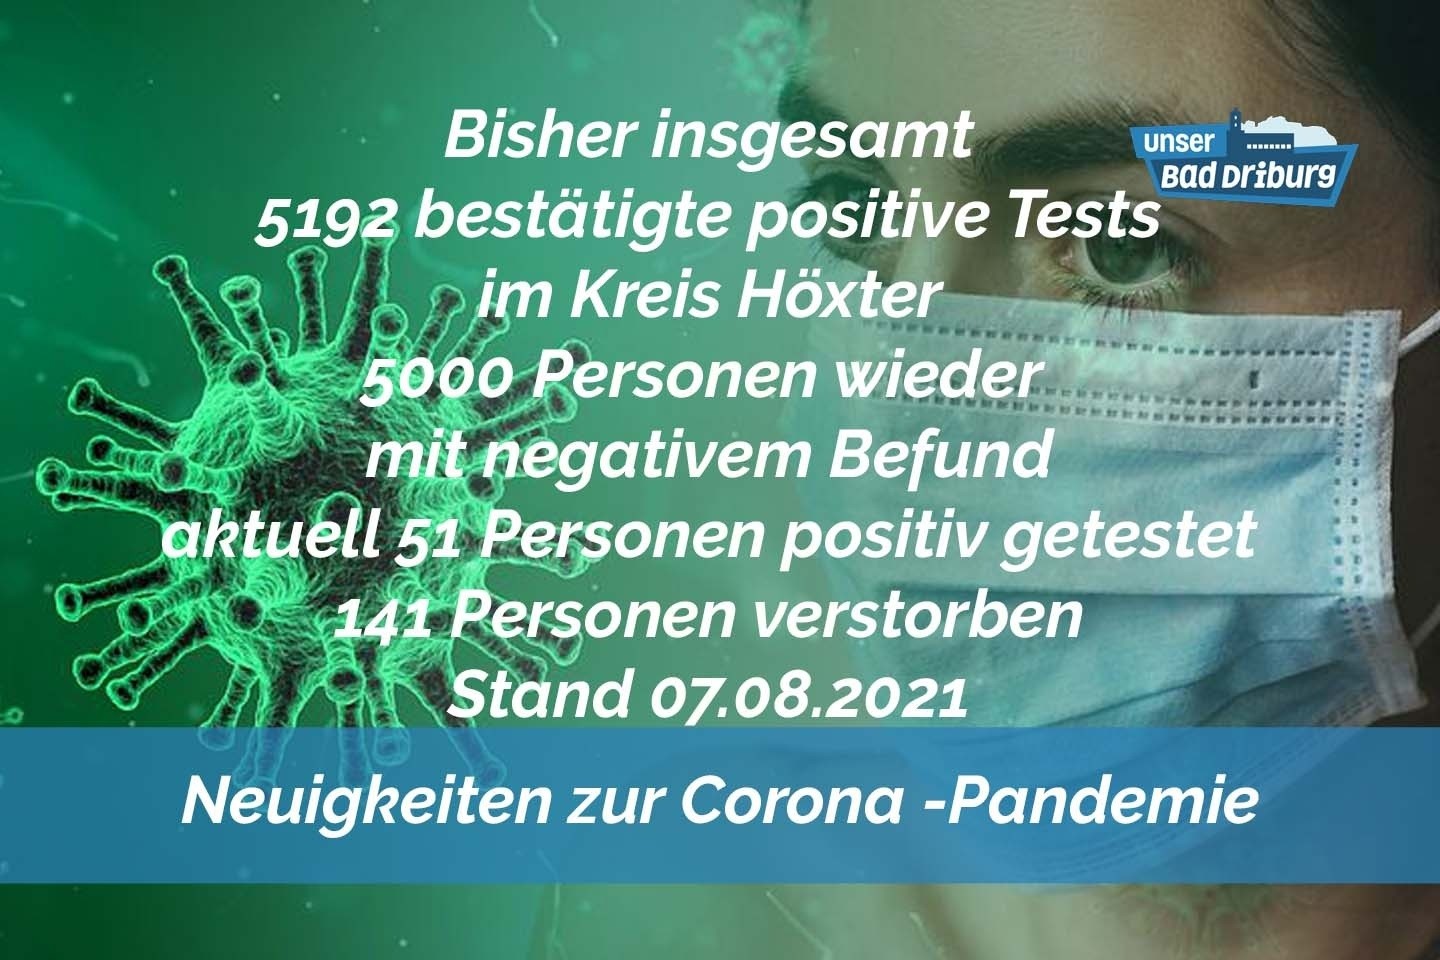 Update 07. August: 7 weitere amtlich positive Tests im Kreis Höxter